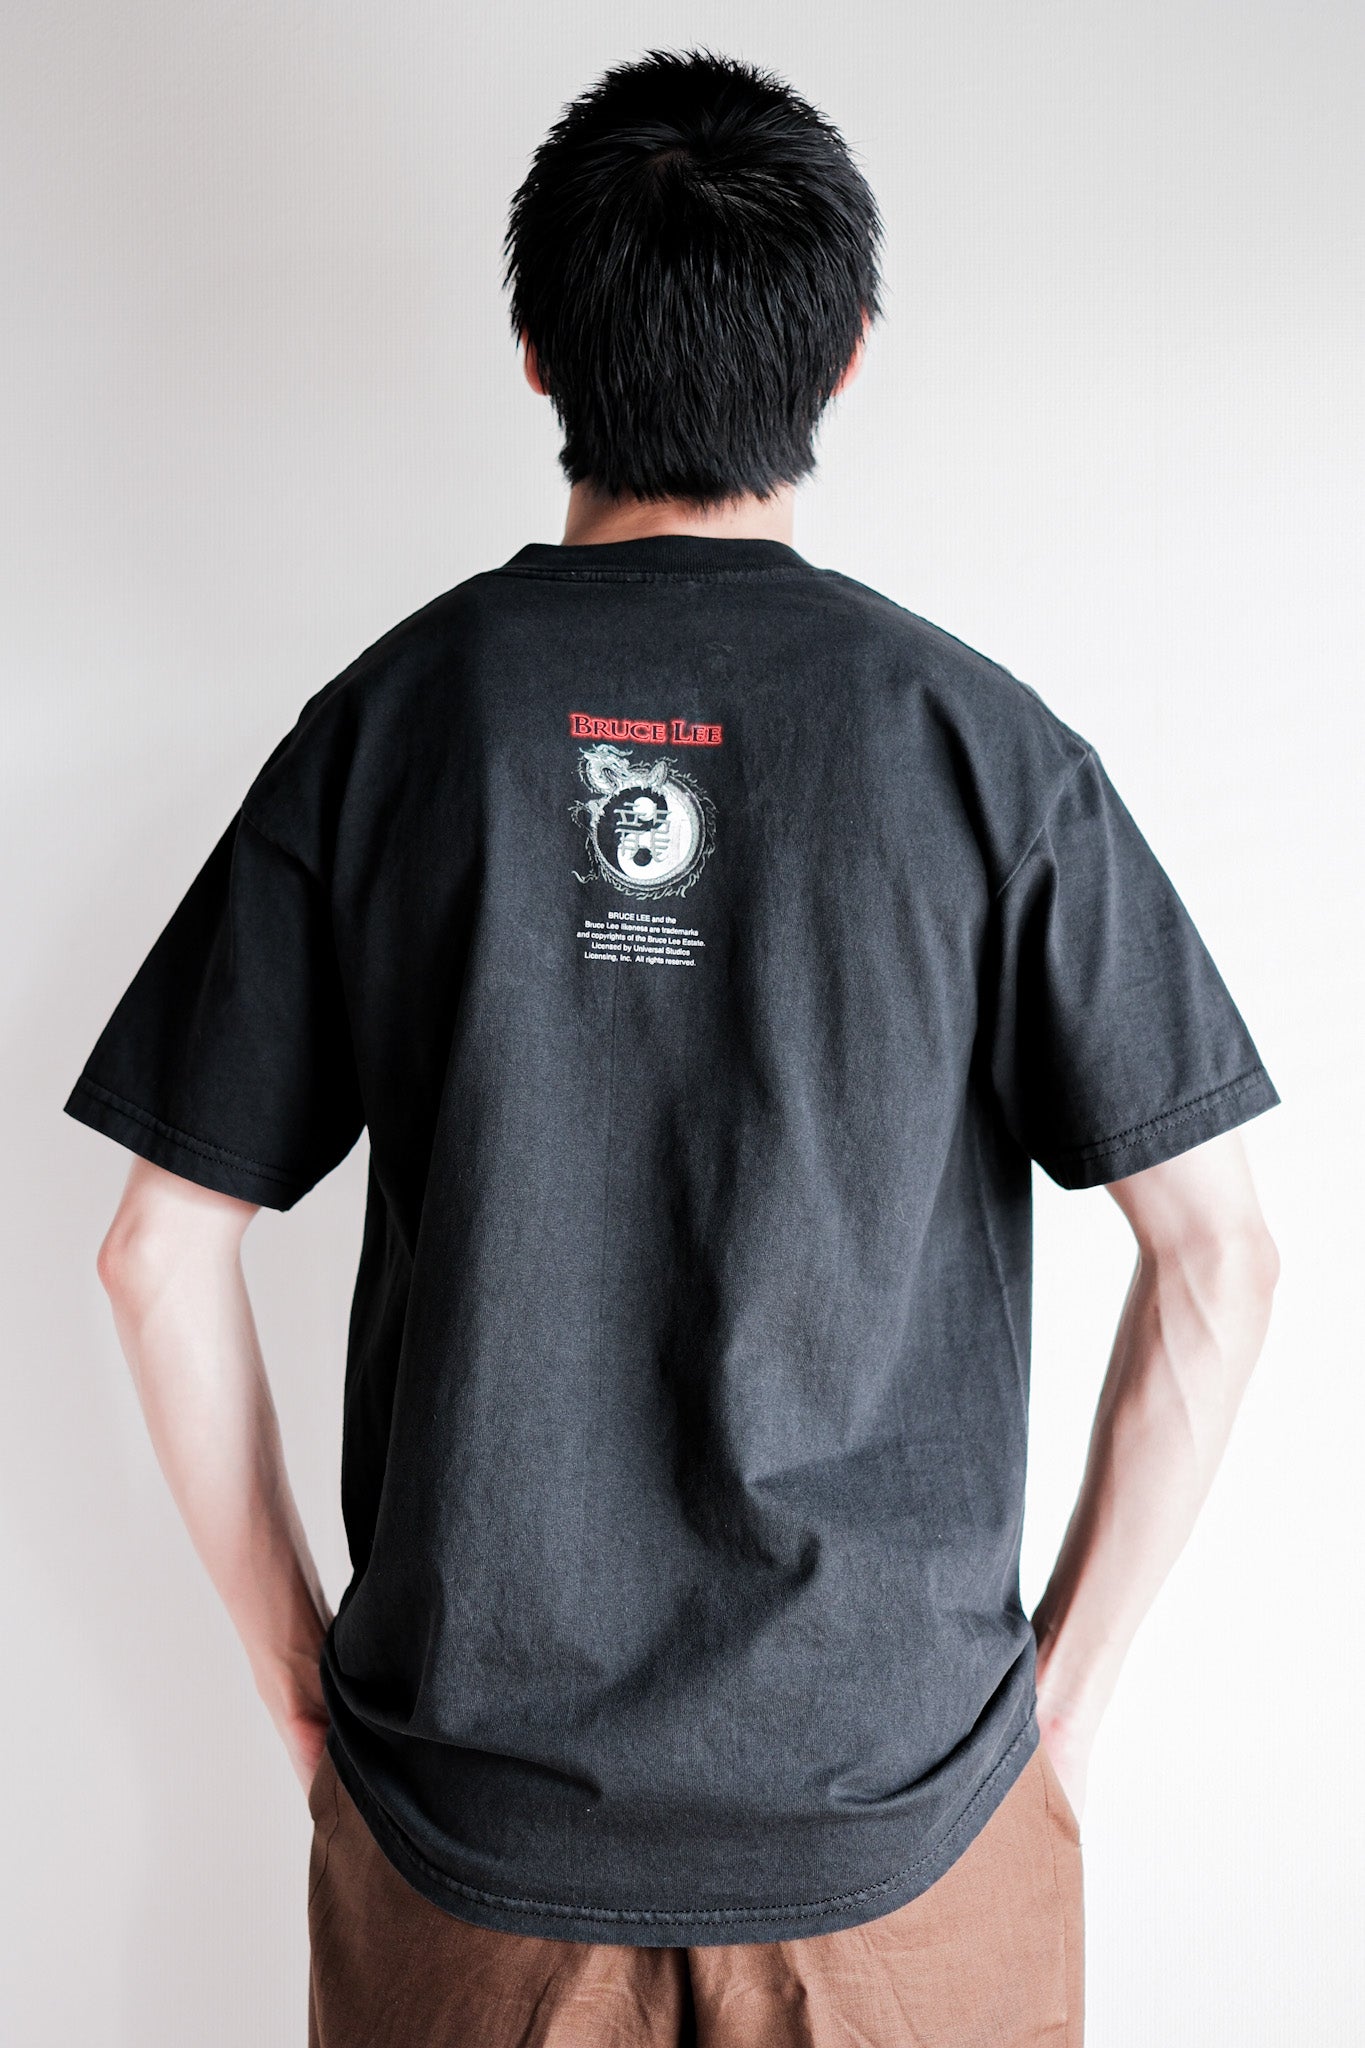 【~00's】Vintage Print T-shirt Size.M "Bruce Lee"